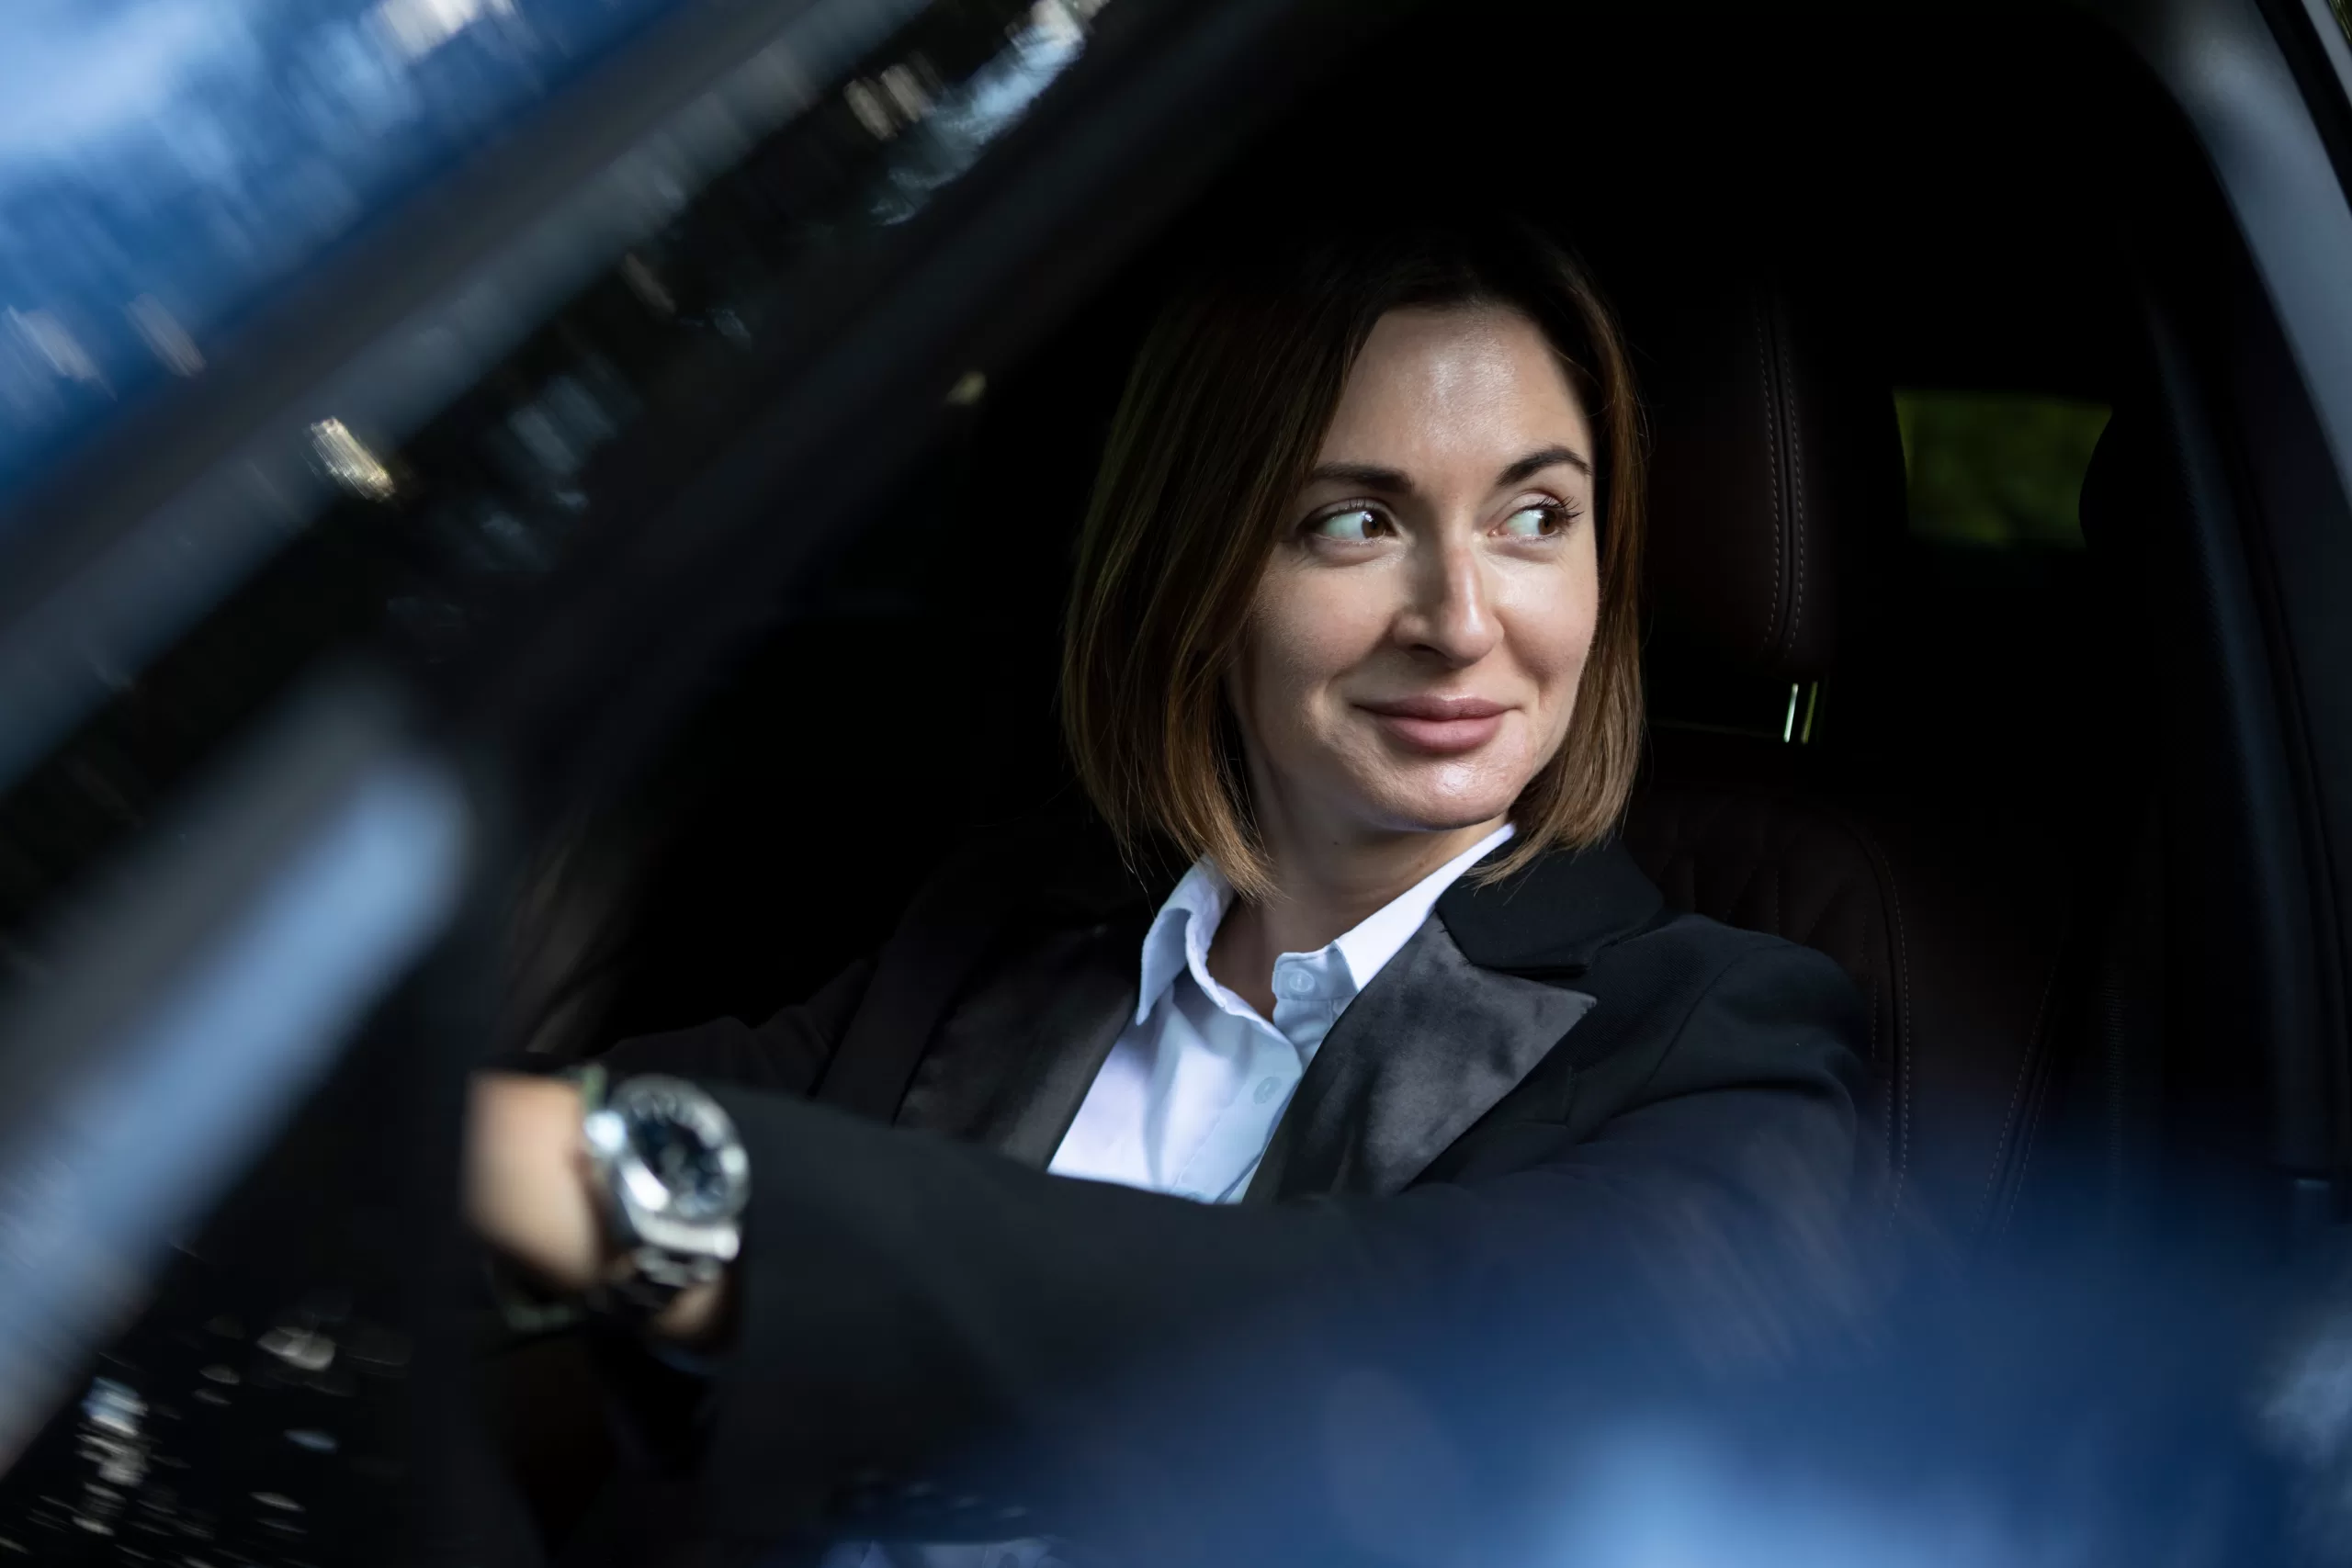 Female Chauffeur in London